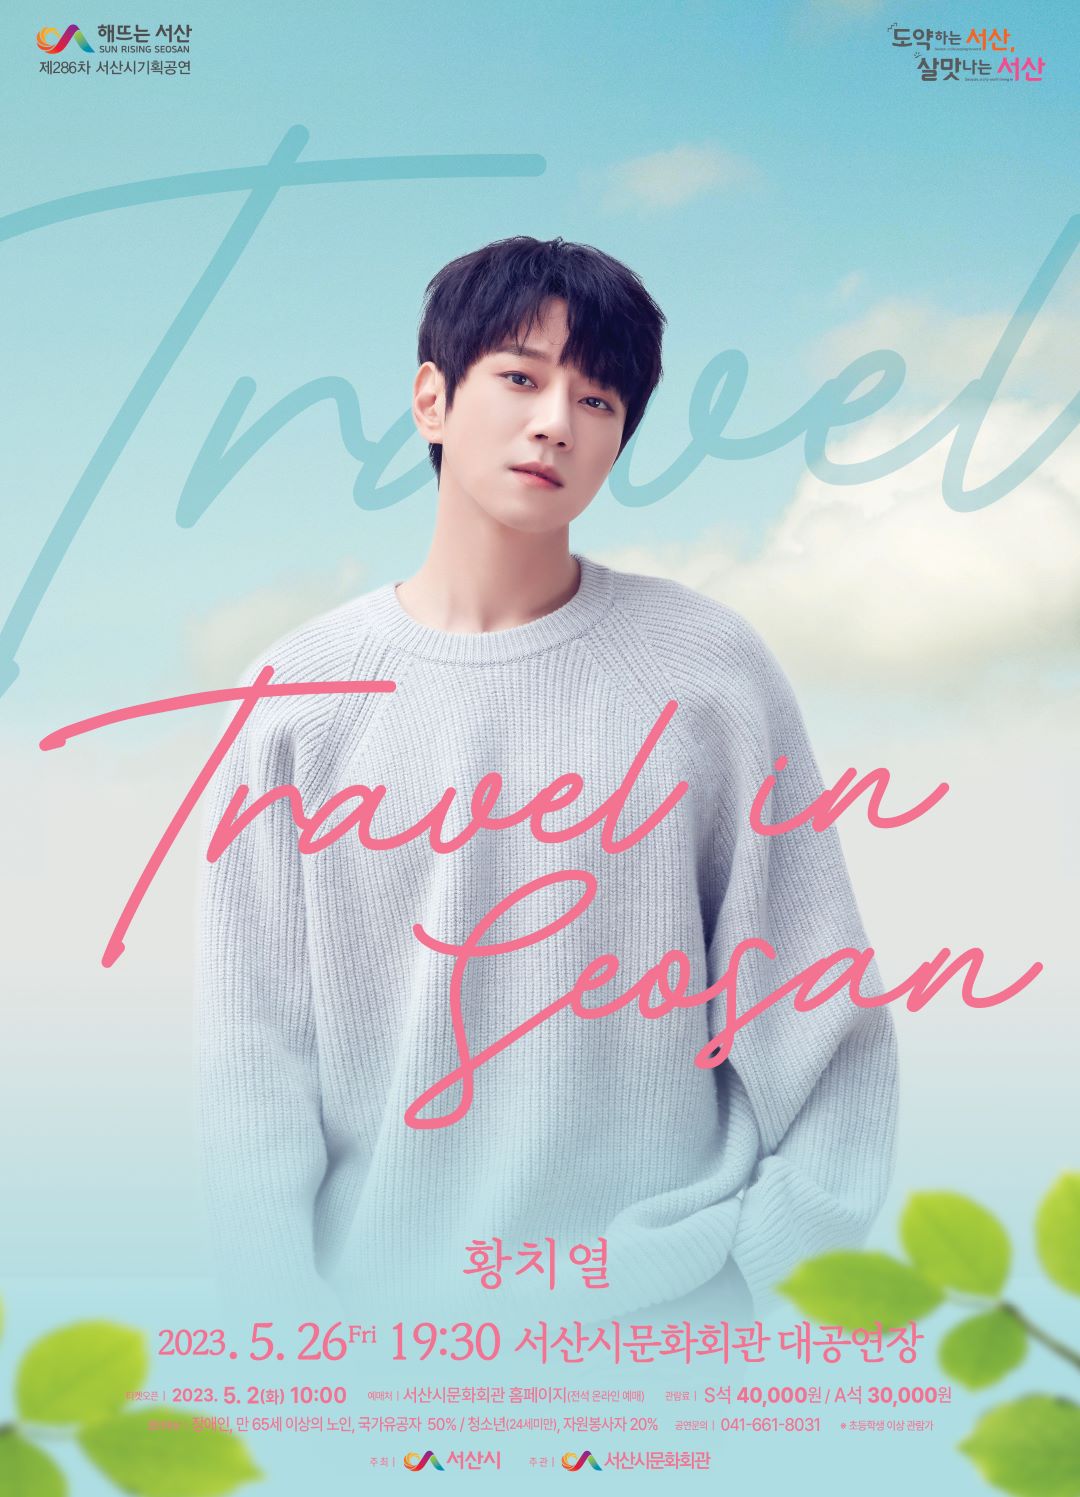 다원예술 『 황치열 Travel in seosan 』